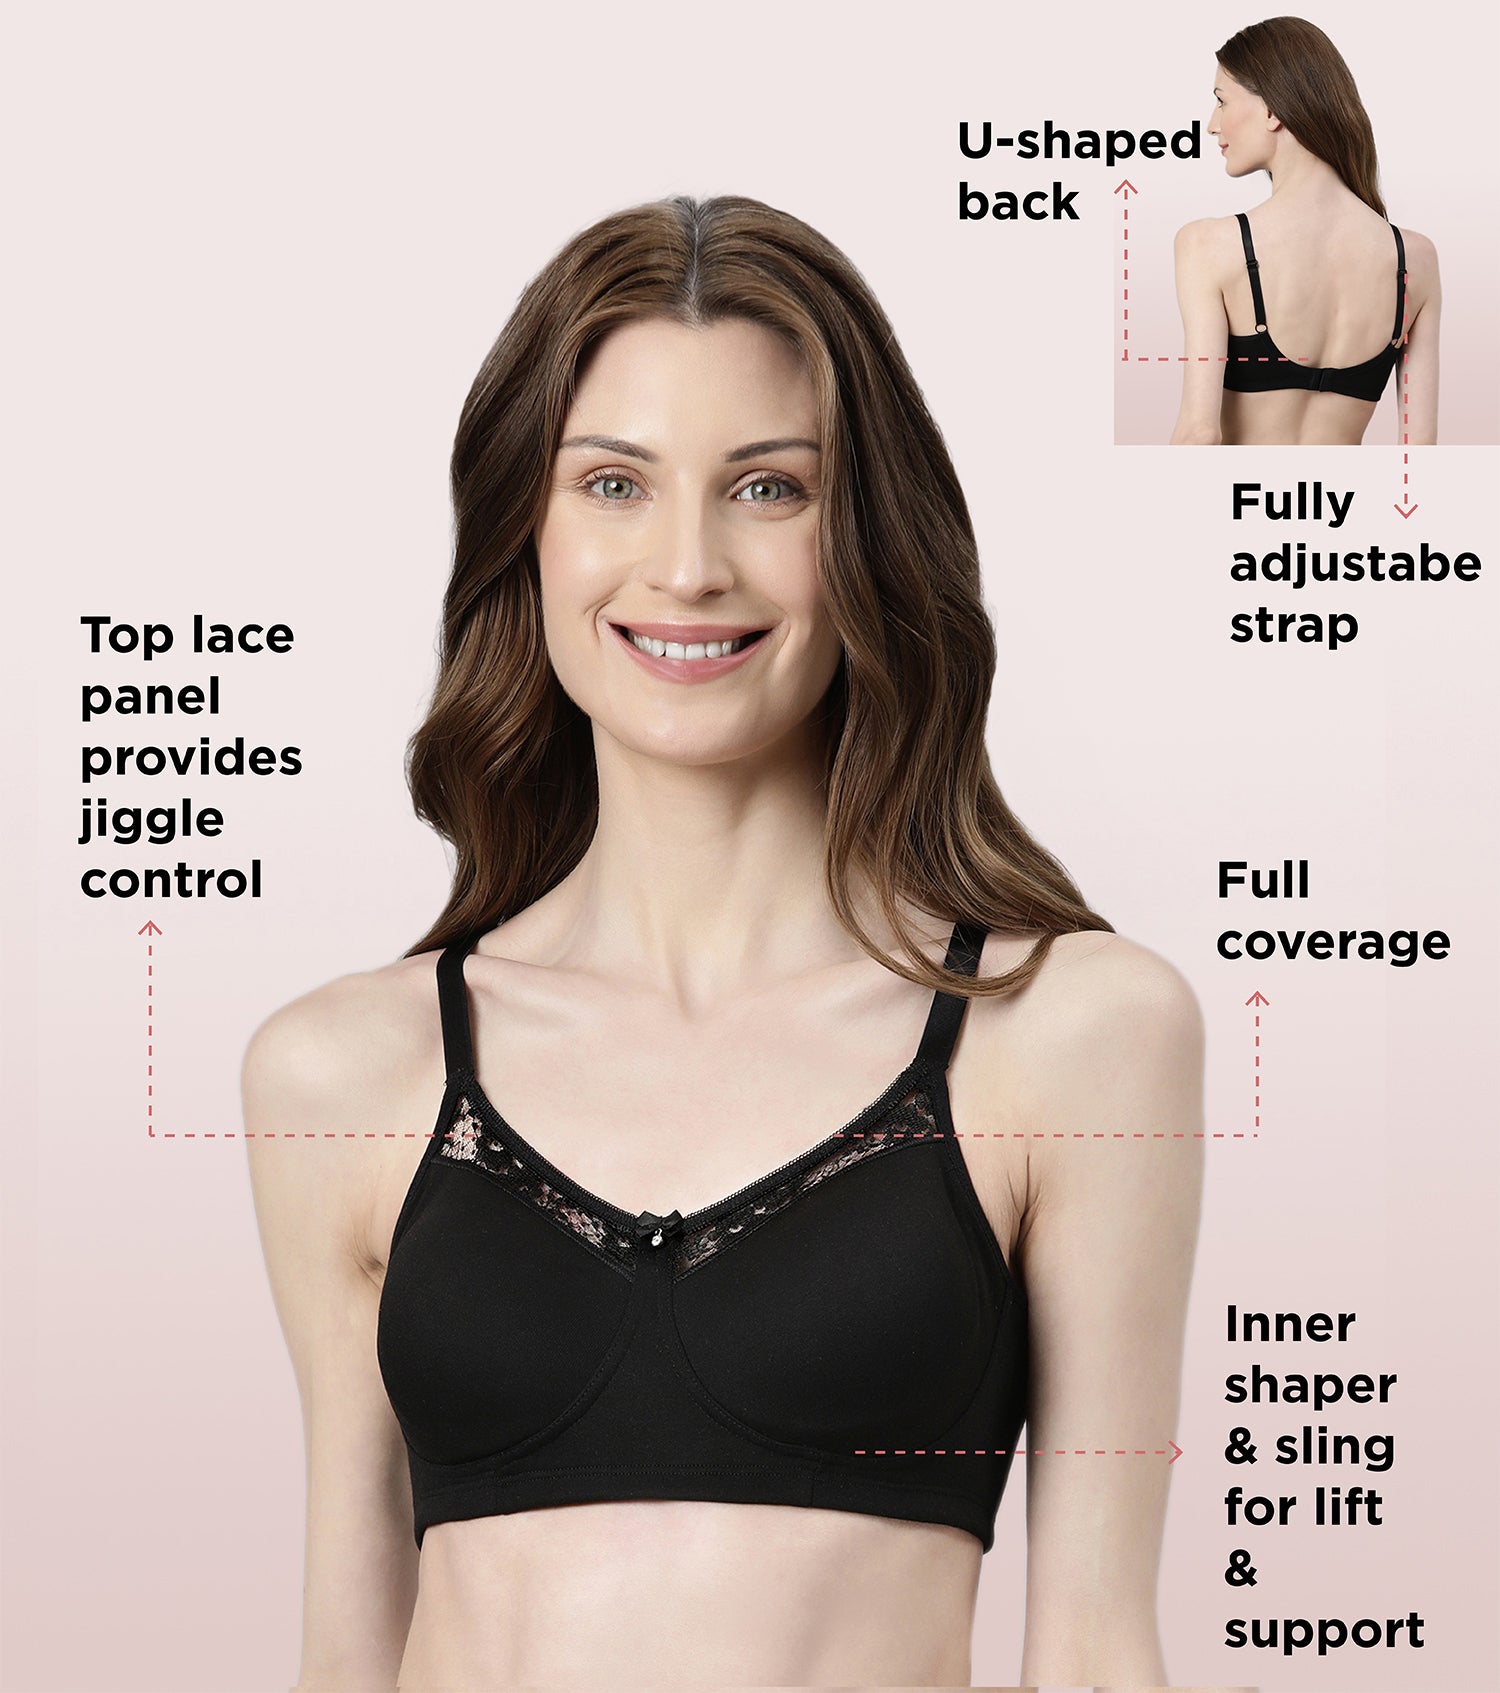 Enamor - How to wear a bra 